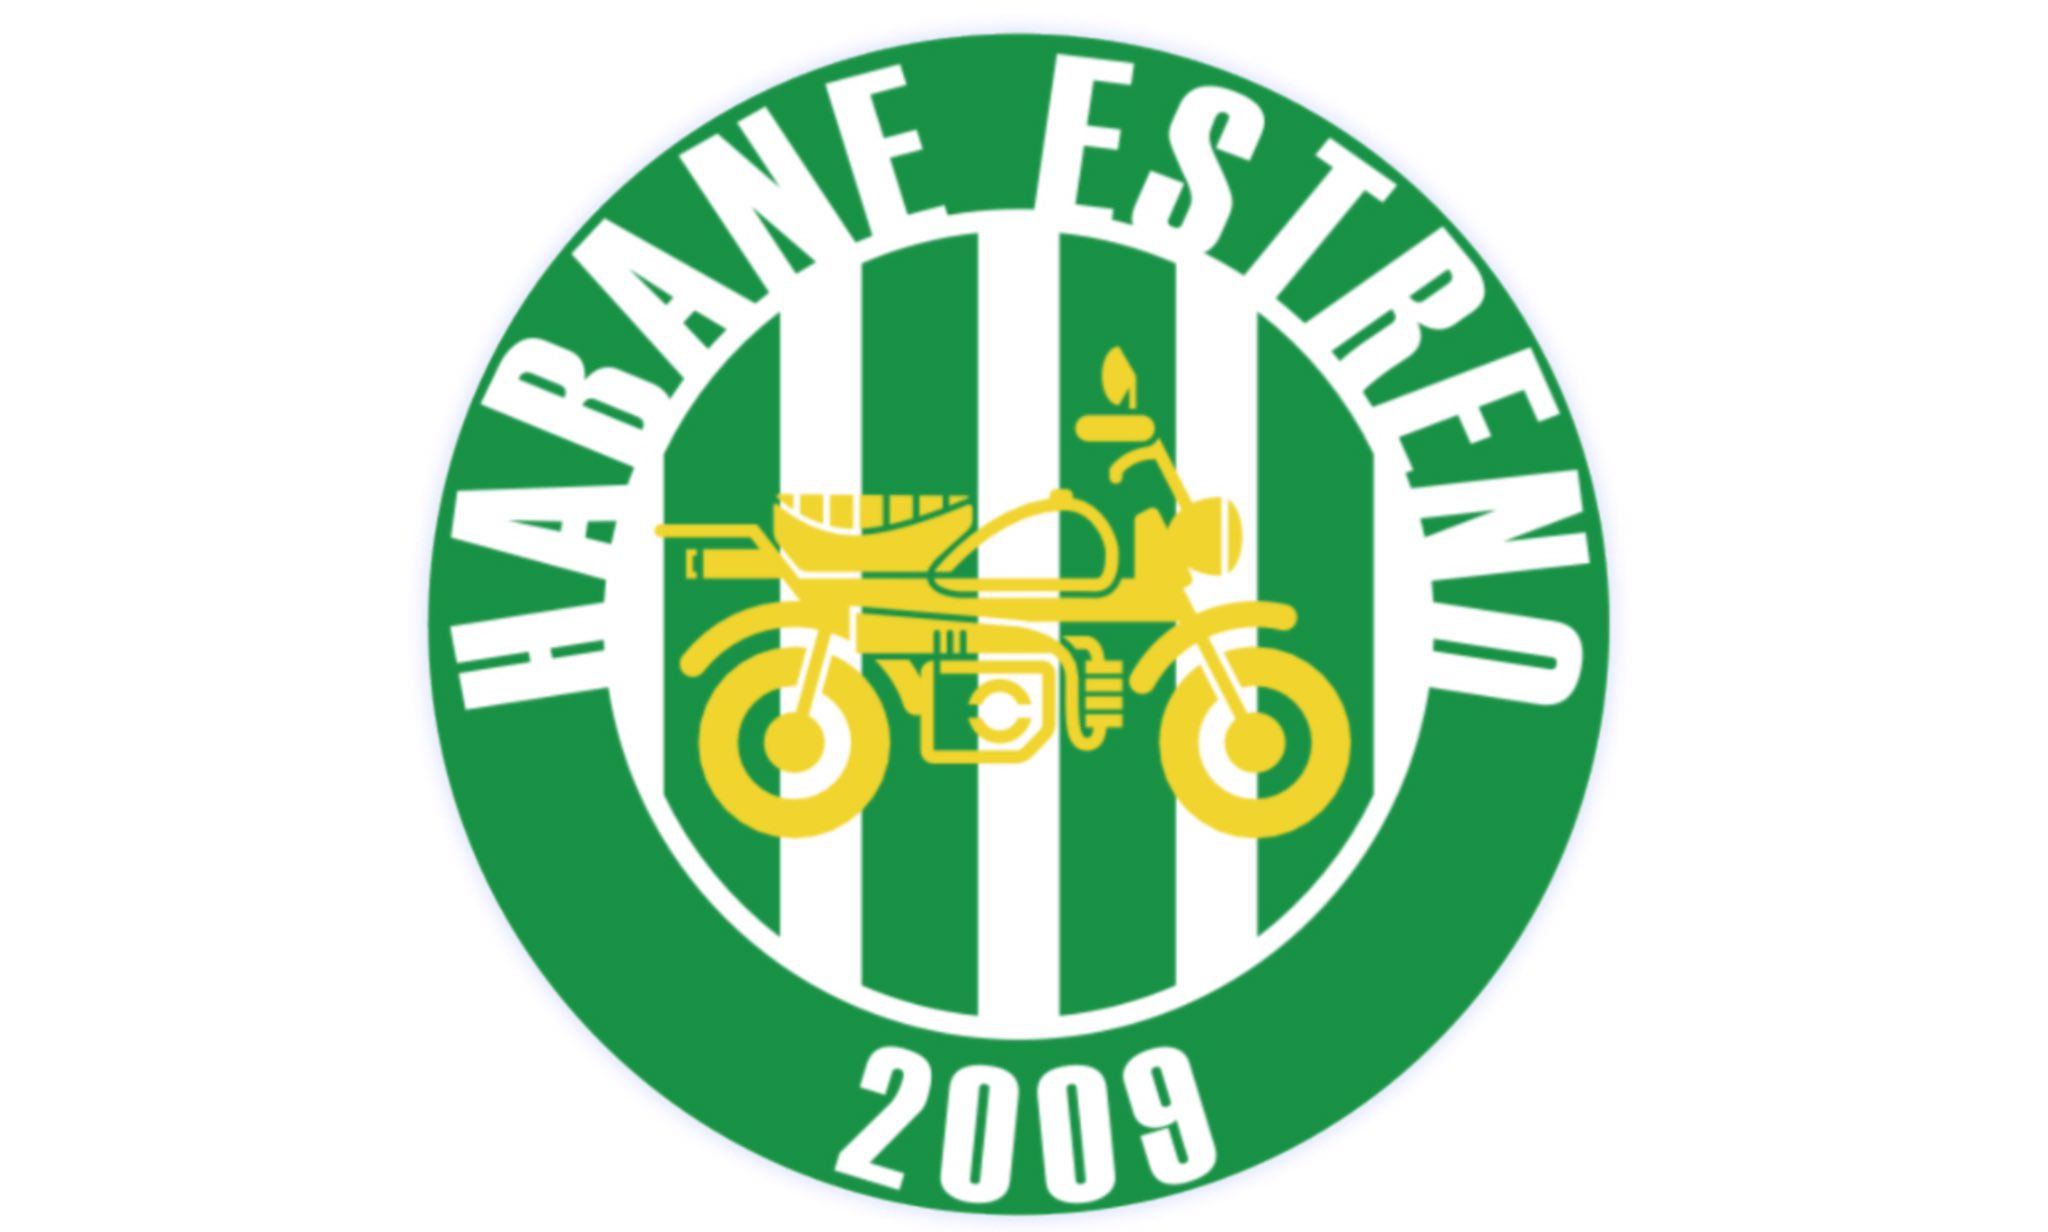 架空のサッカーチーム 葉羽エストレーノ の可能性 Hummel Official Web Site